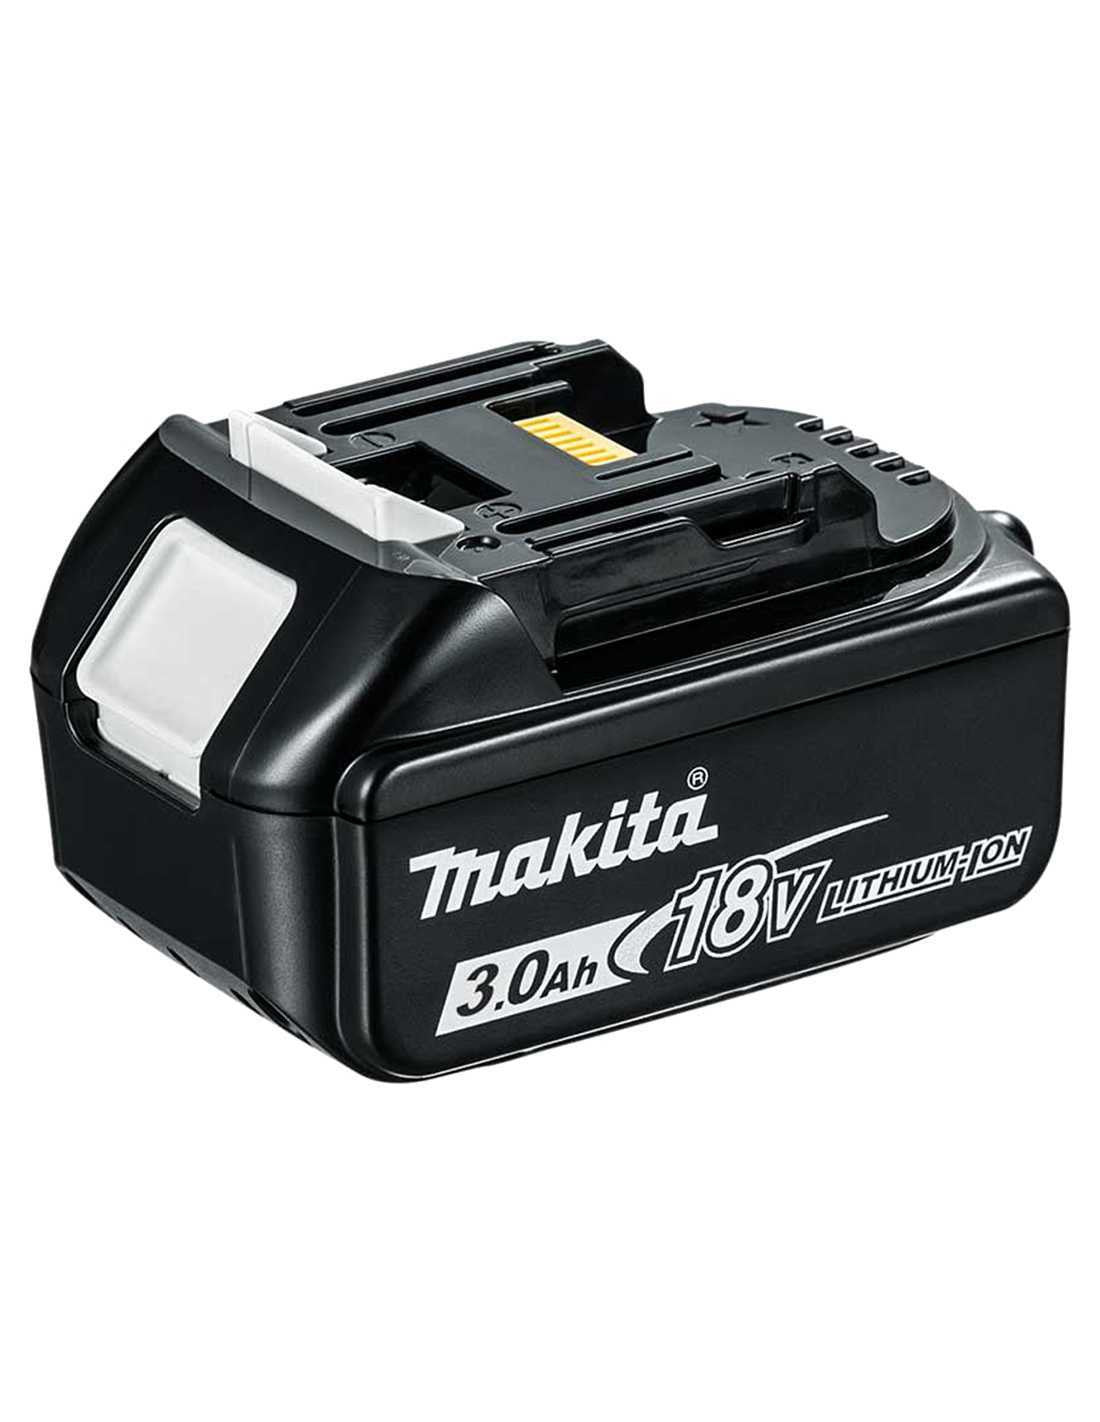 Makita Kit avec 11 outils + 3 battes + chargeur + 2 pochettes DLX1171BL3